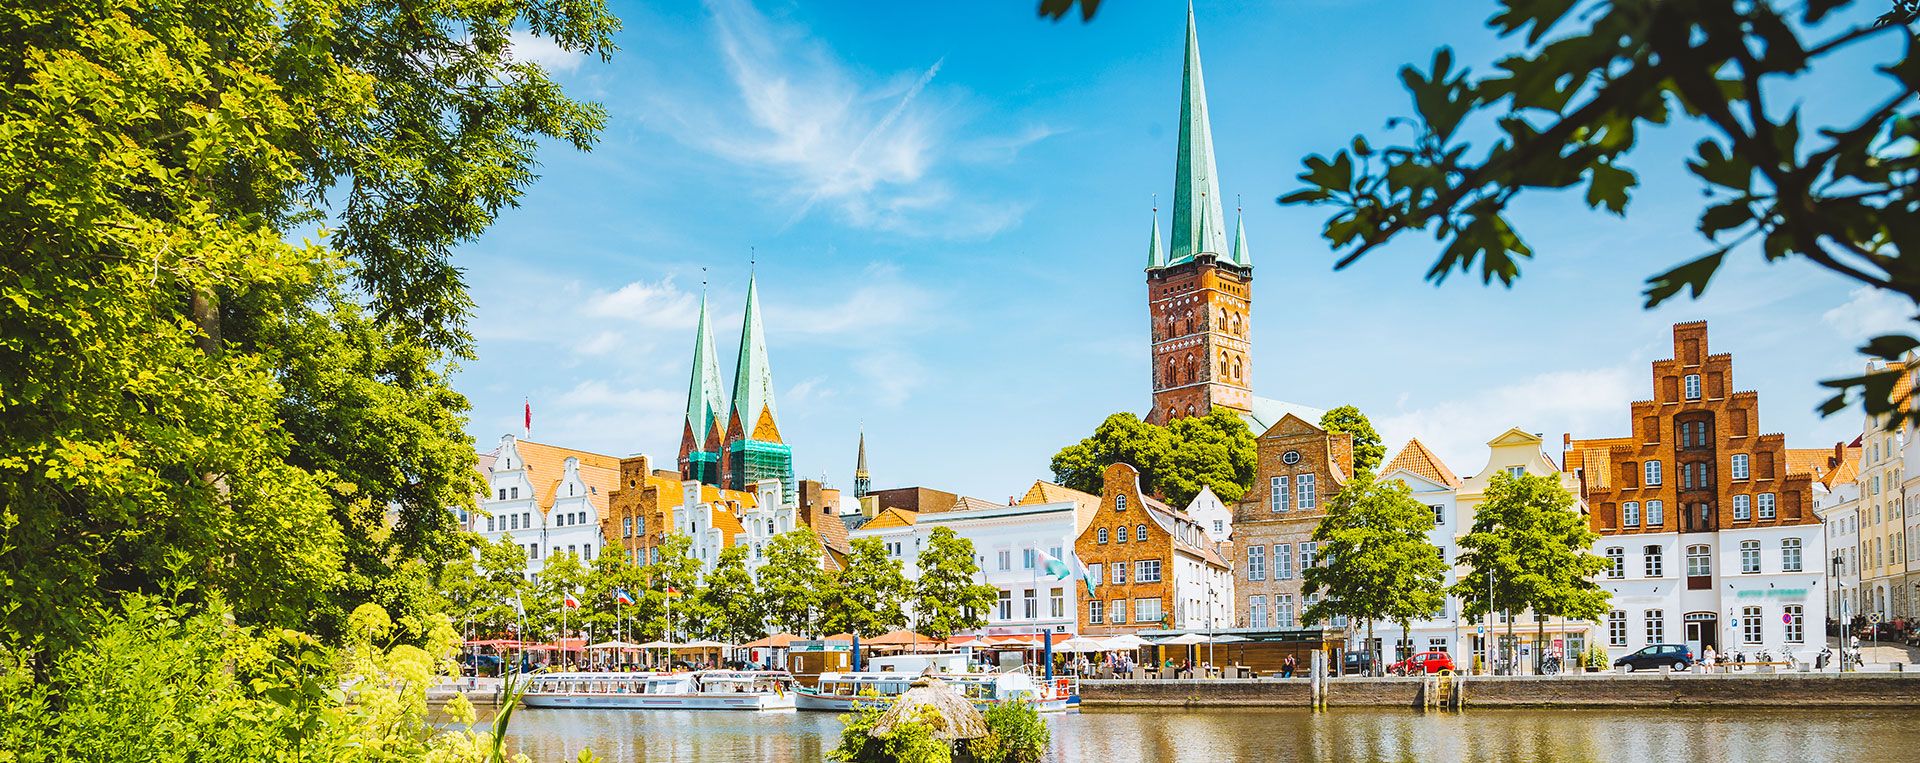 Foto: Stadtansicht von Lübeck